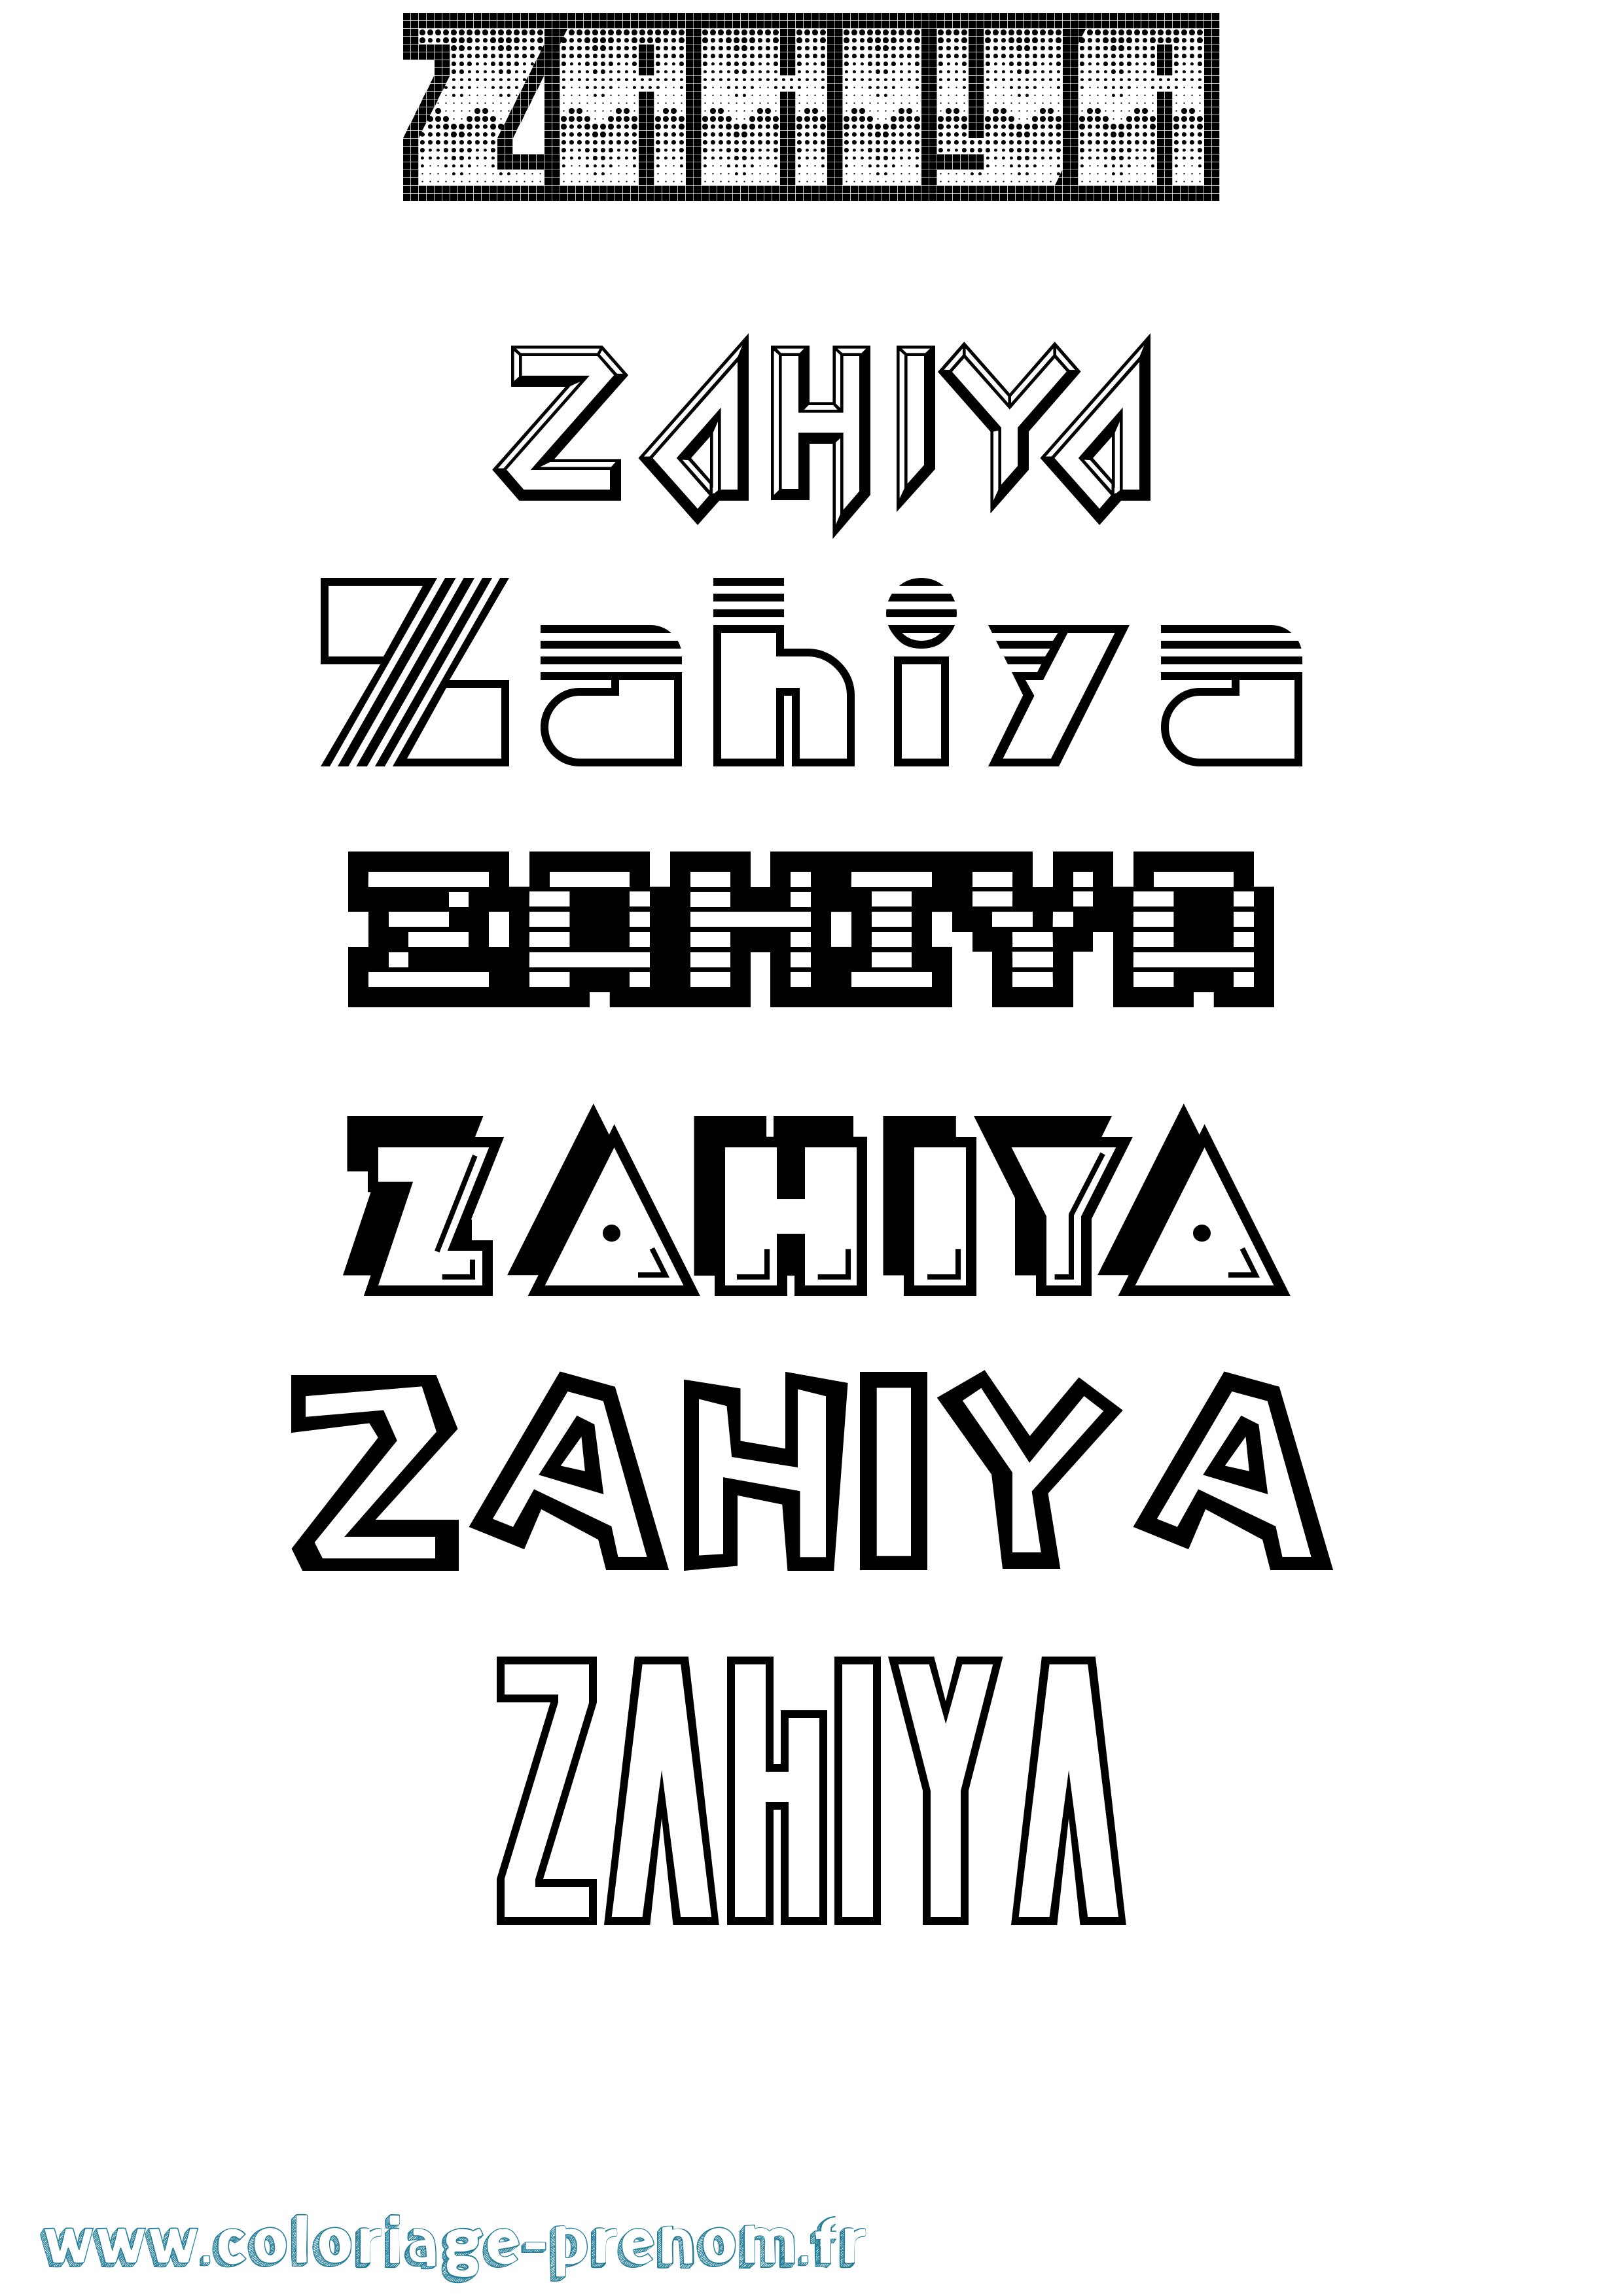 Coloriage prénom Zahiya Jeux Vidéos